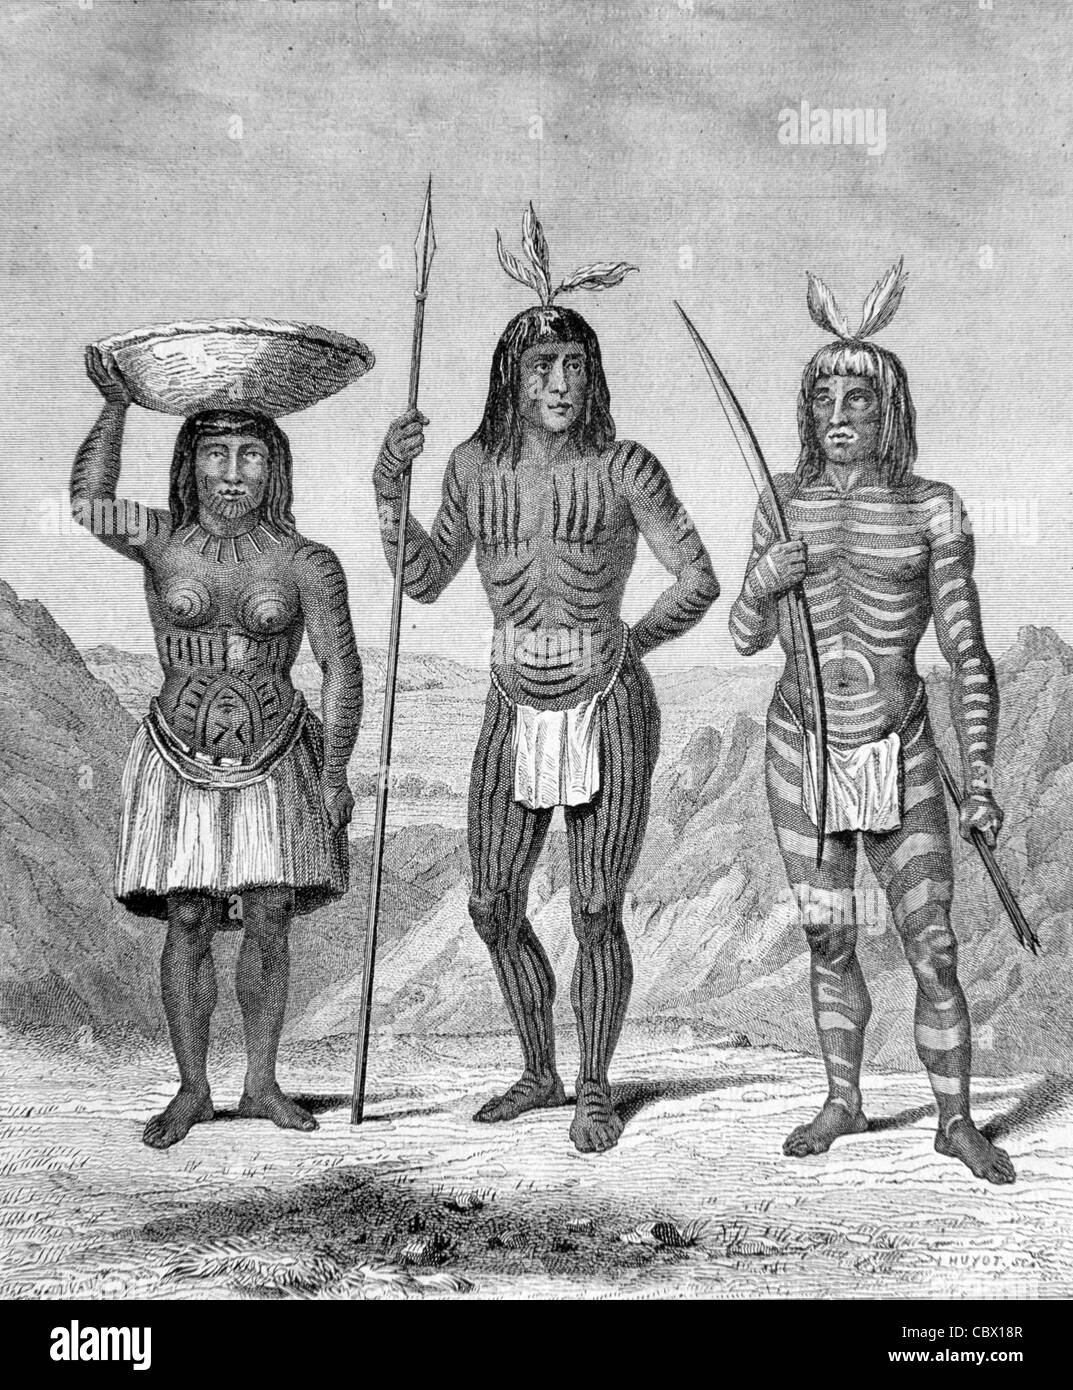 Mohave oder Mojave Indianer, Colorado, USA 1860 Engraving. Mit Körperscharbung oder Tattoos. Vintage Illustration oder Gravur Stockfoto